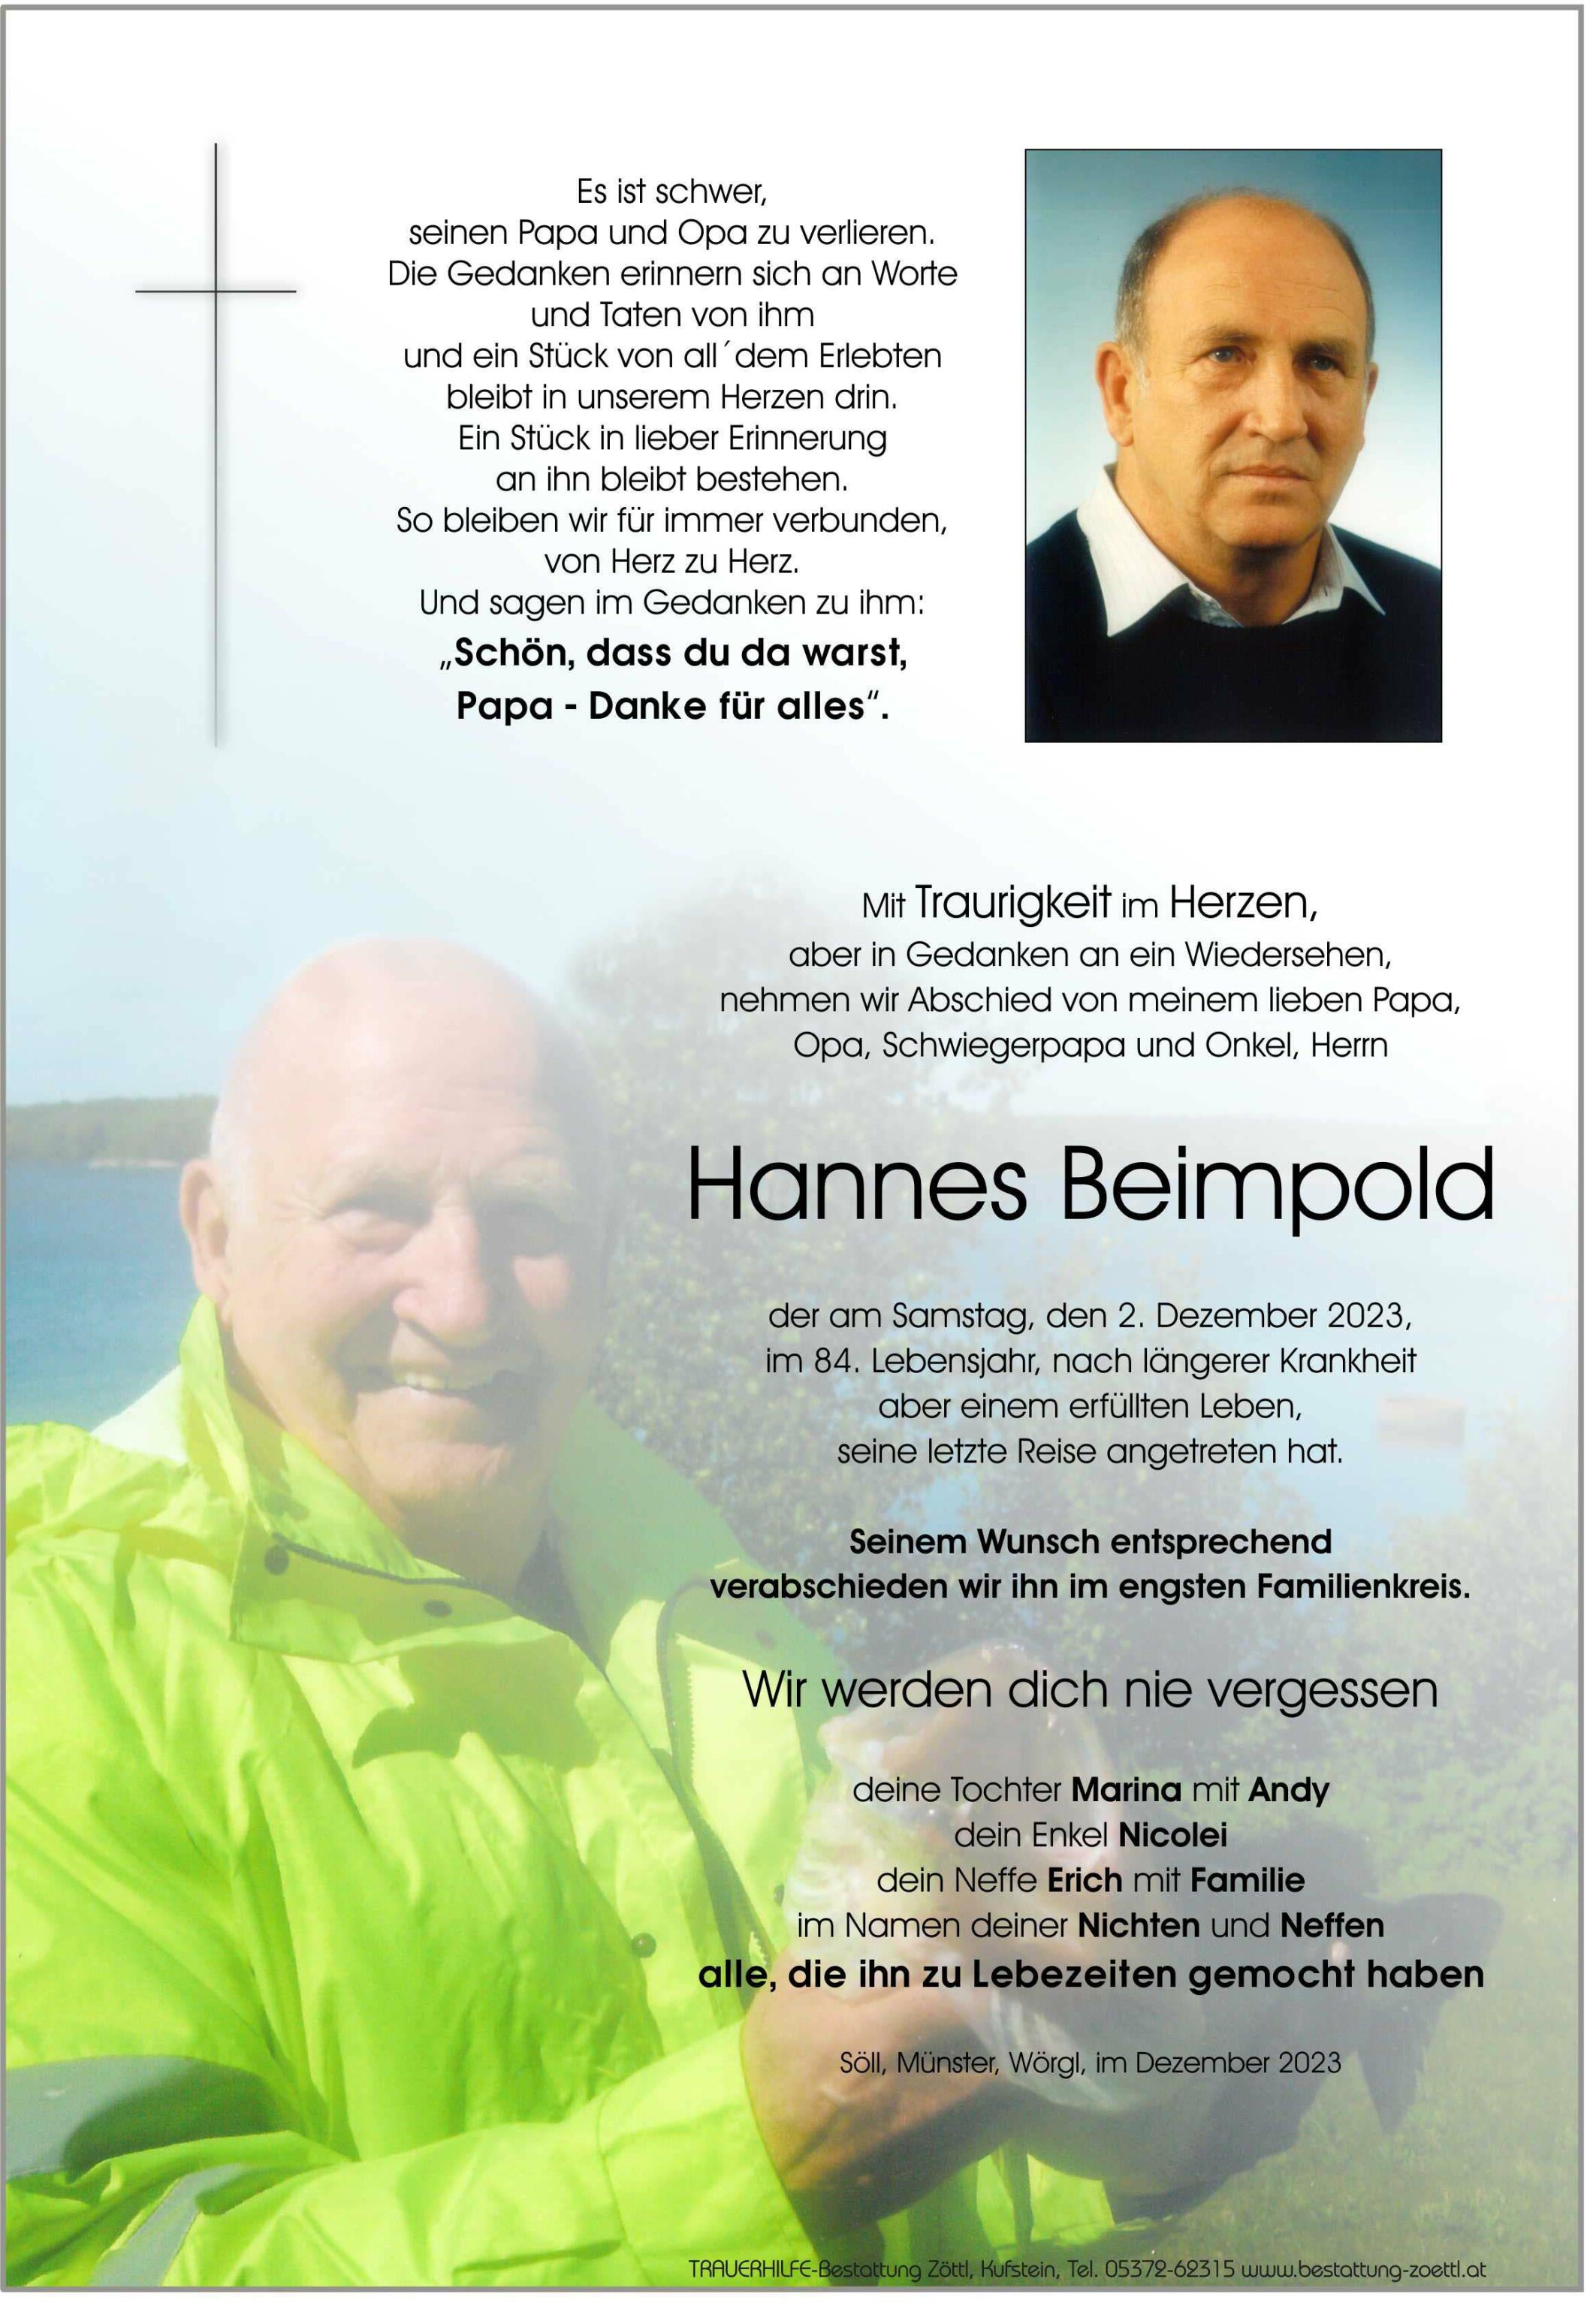 Hannes Beimpold